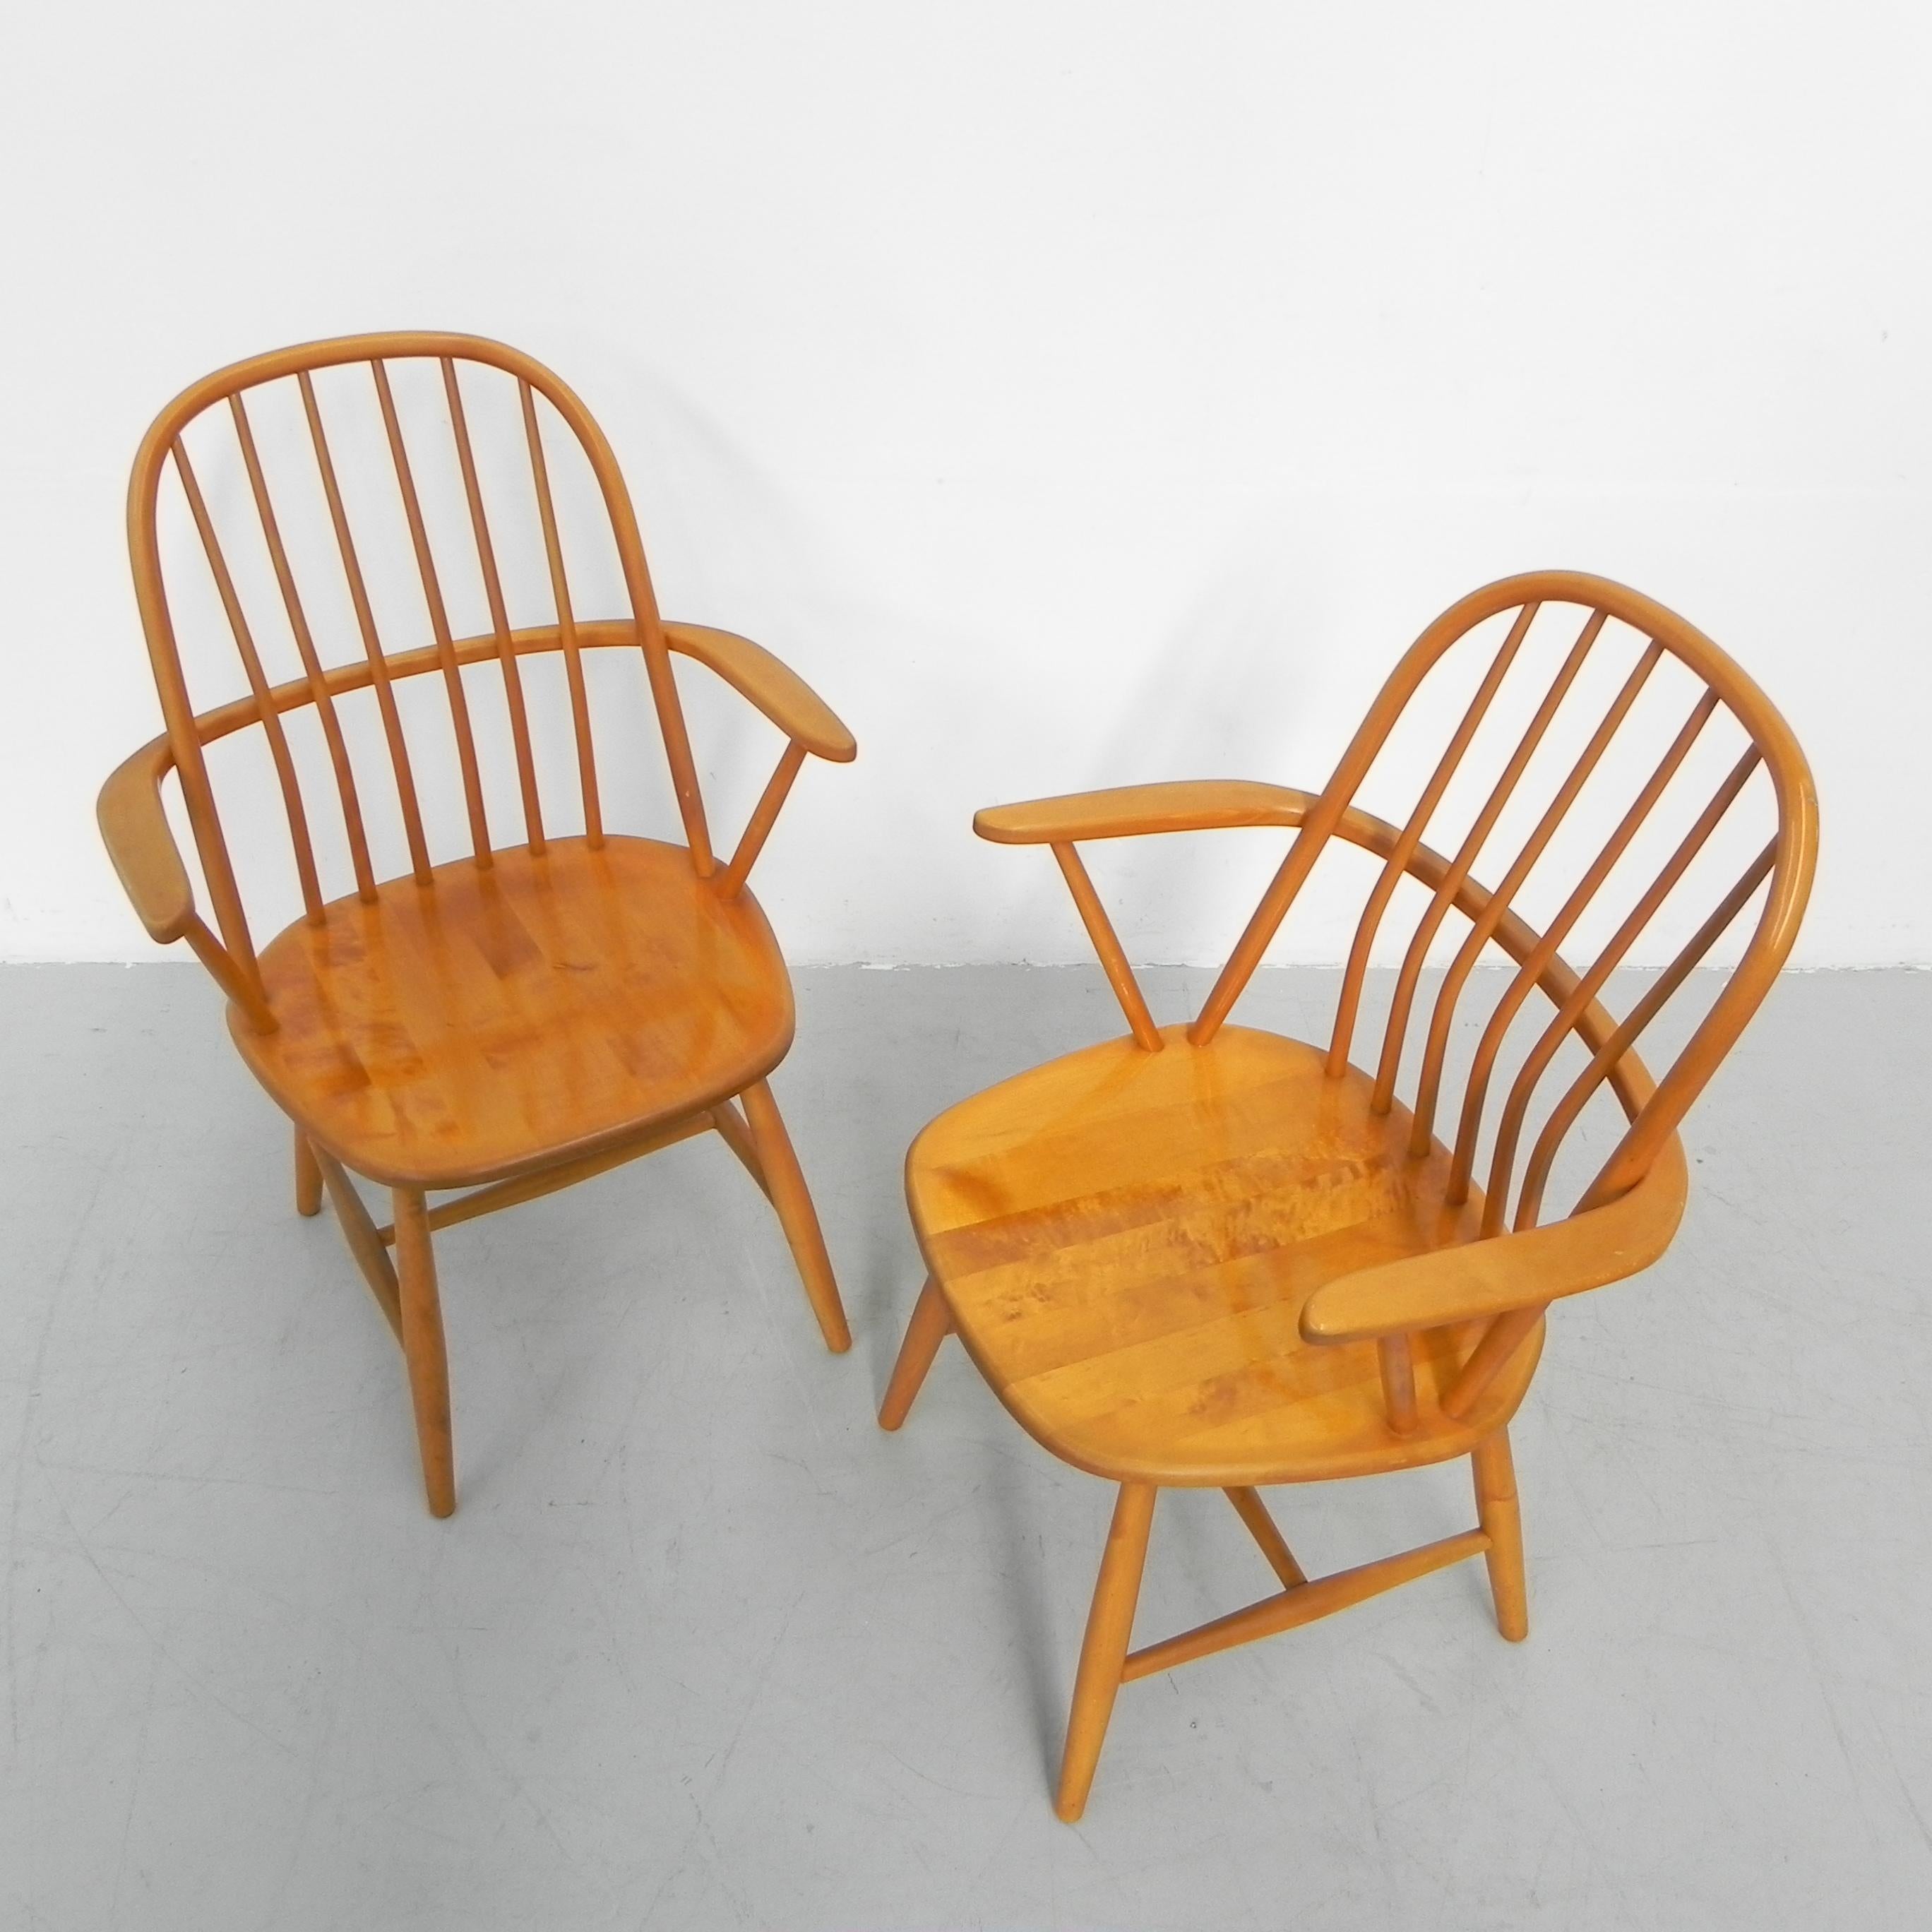 Diese Stühle werden von Bengt Akerblom entworfen und hergestellt.
von Nassjo Stolen Fabrik (später Nesto) in den frühen 1950er Jahren.

Höhe: 89 cm.
Sitzhöhe: 42 cm.
Breite: 60 cm.
Tiefe: 56 cm.
Herkunft: Schweden, 1950er Jahre.
MATERIAL: Birke.